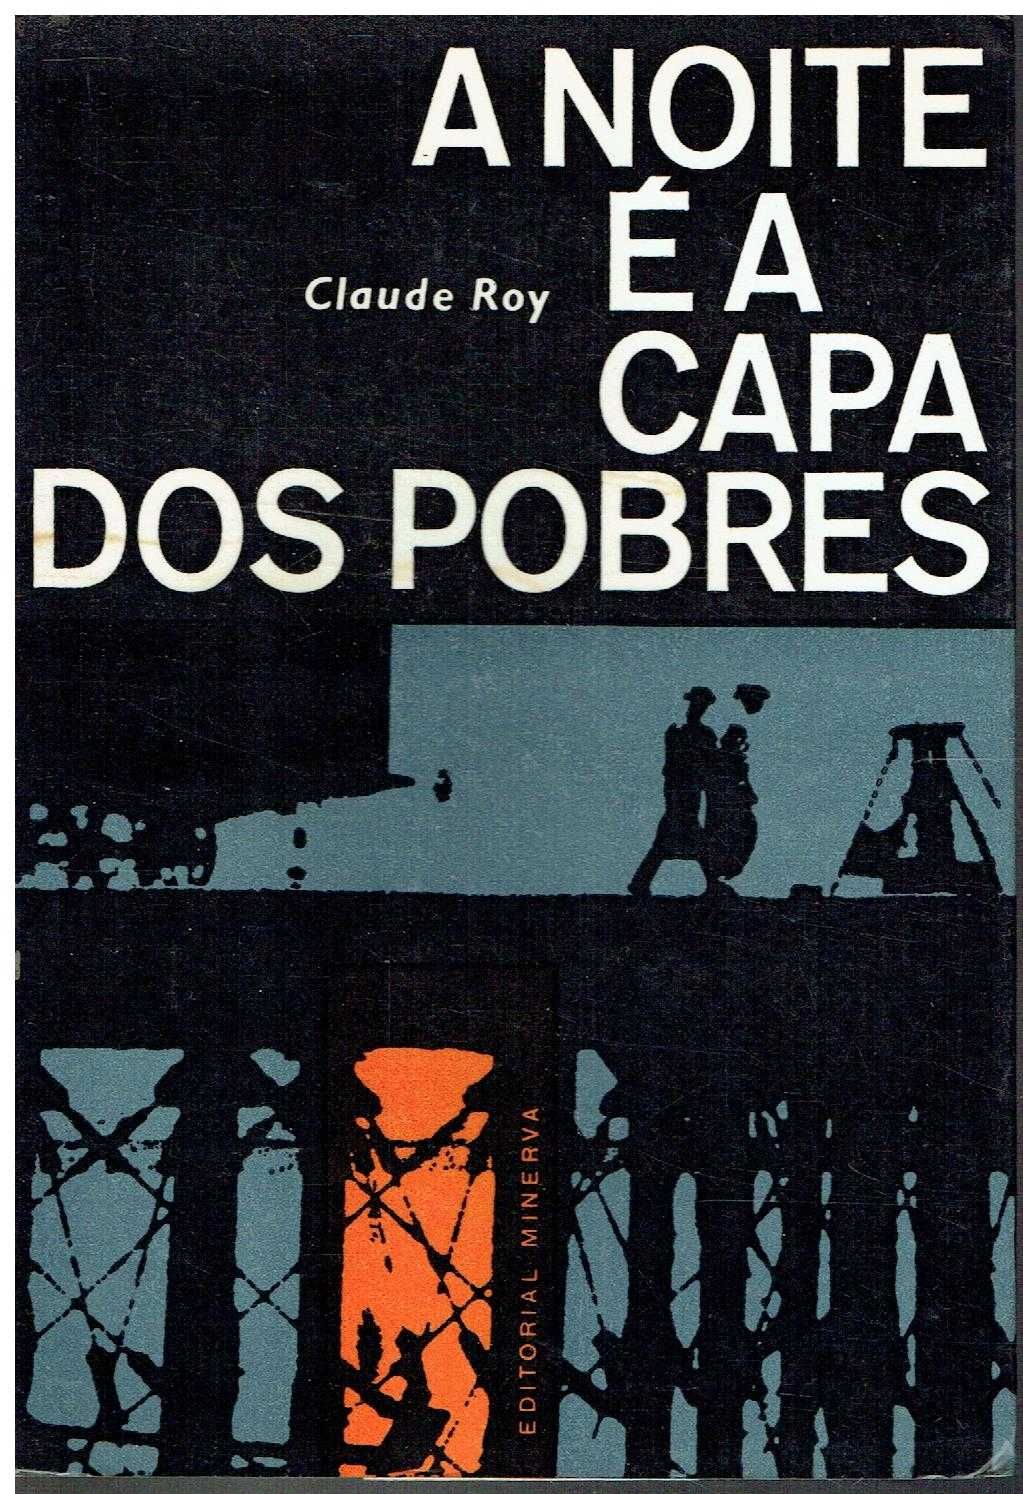 10415

A noite é a capa dos pobres 
de Claude Roy